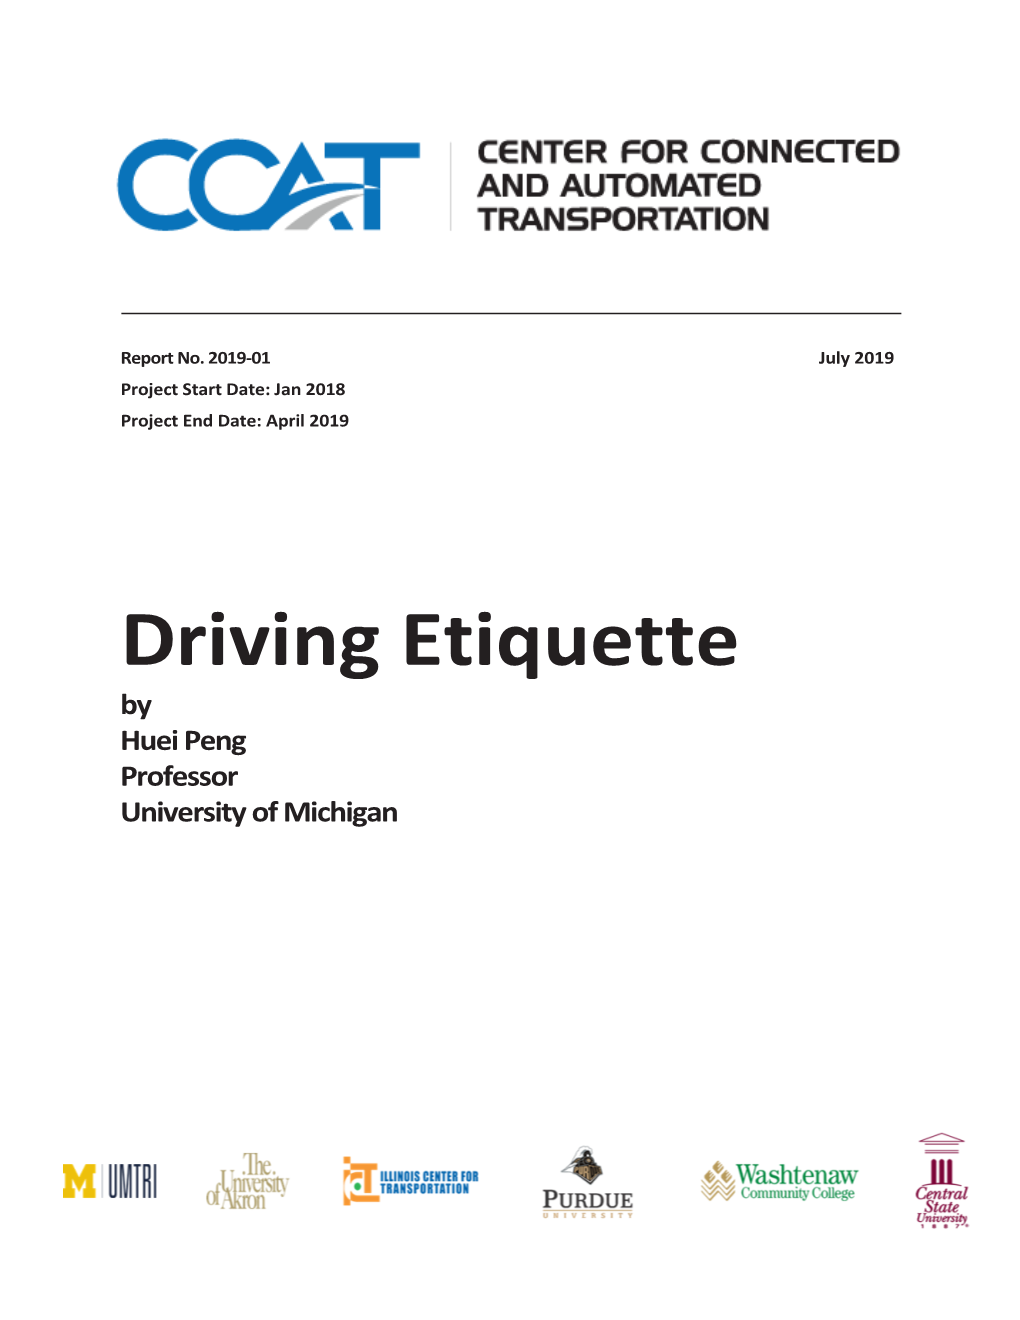 Driving Etiquette Final Report